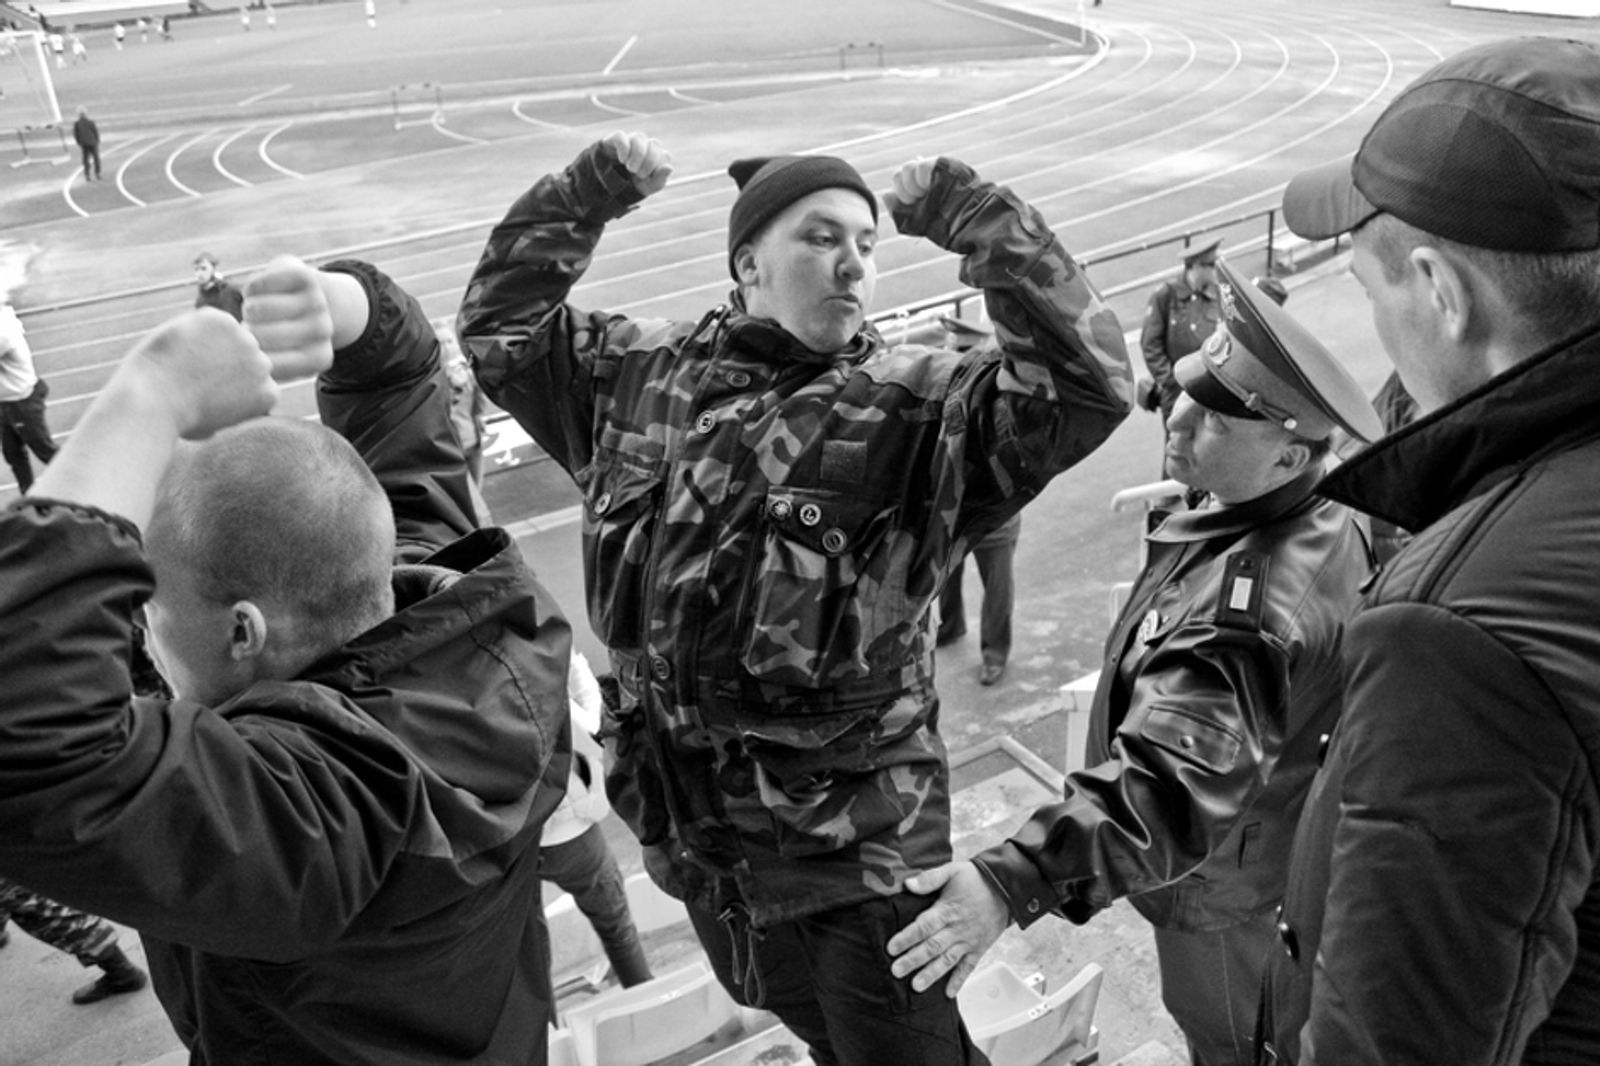 © Pavel Volkov - Football fan police detention